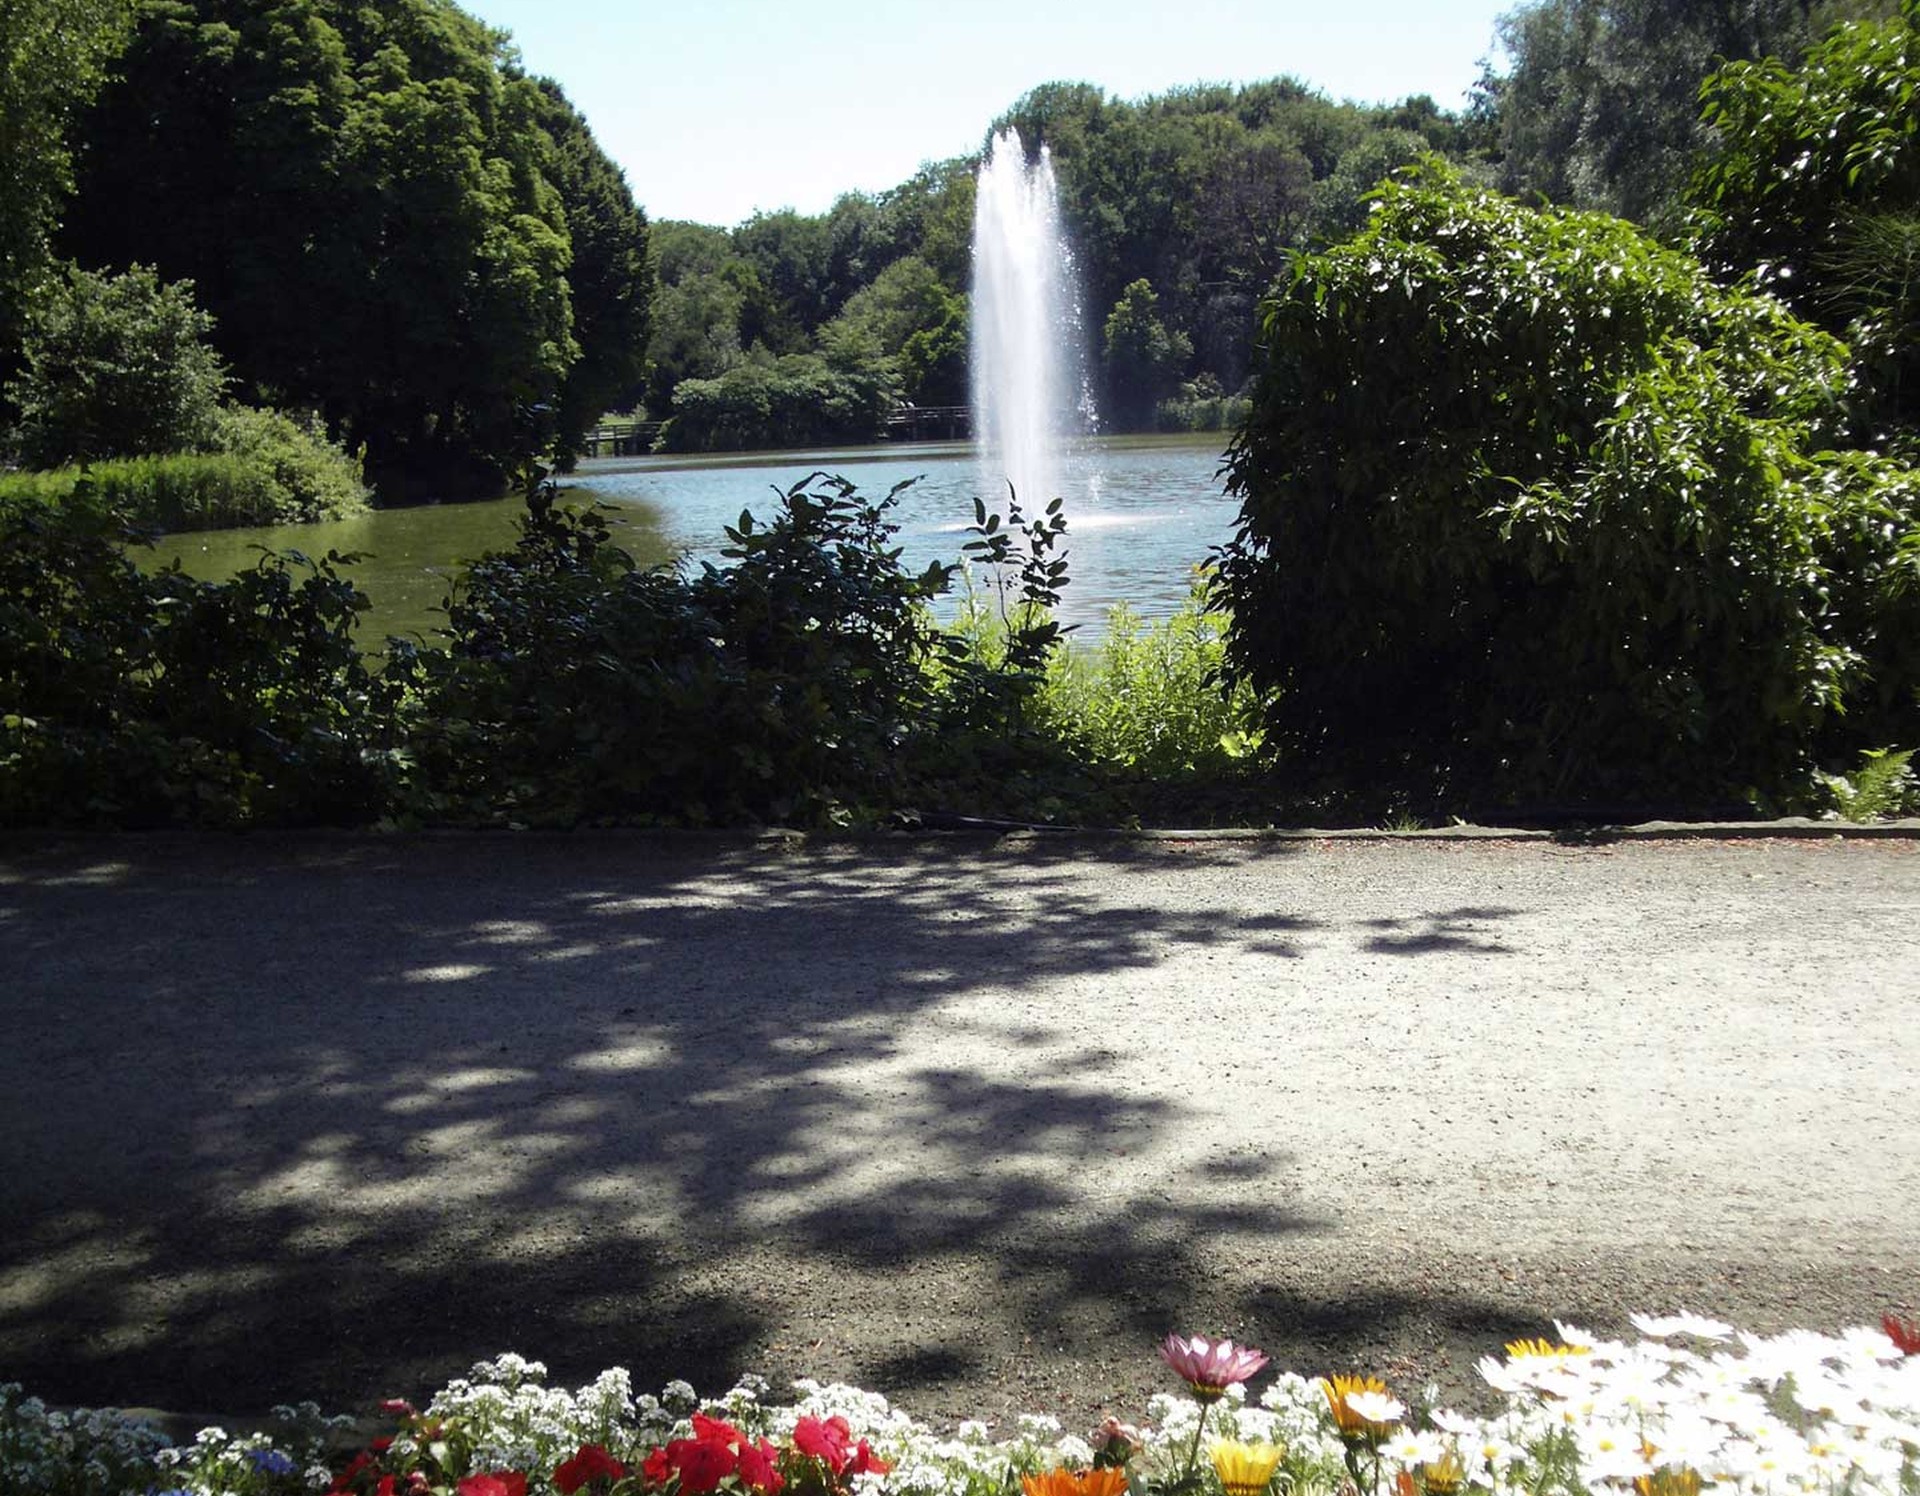 Blick auf den Springbrunnen im See. Am Rand des Parkwegs befindet sich ein Blumenbeet.